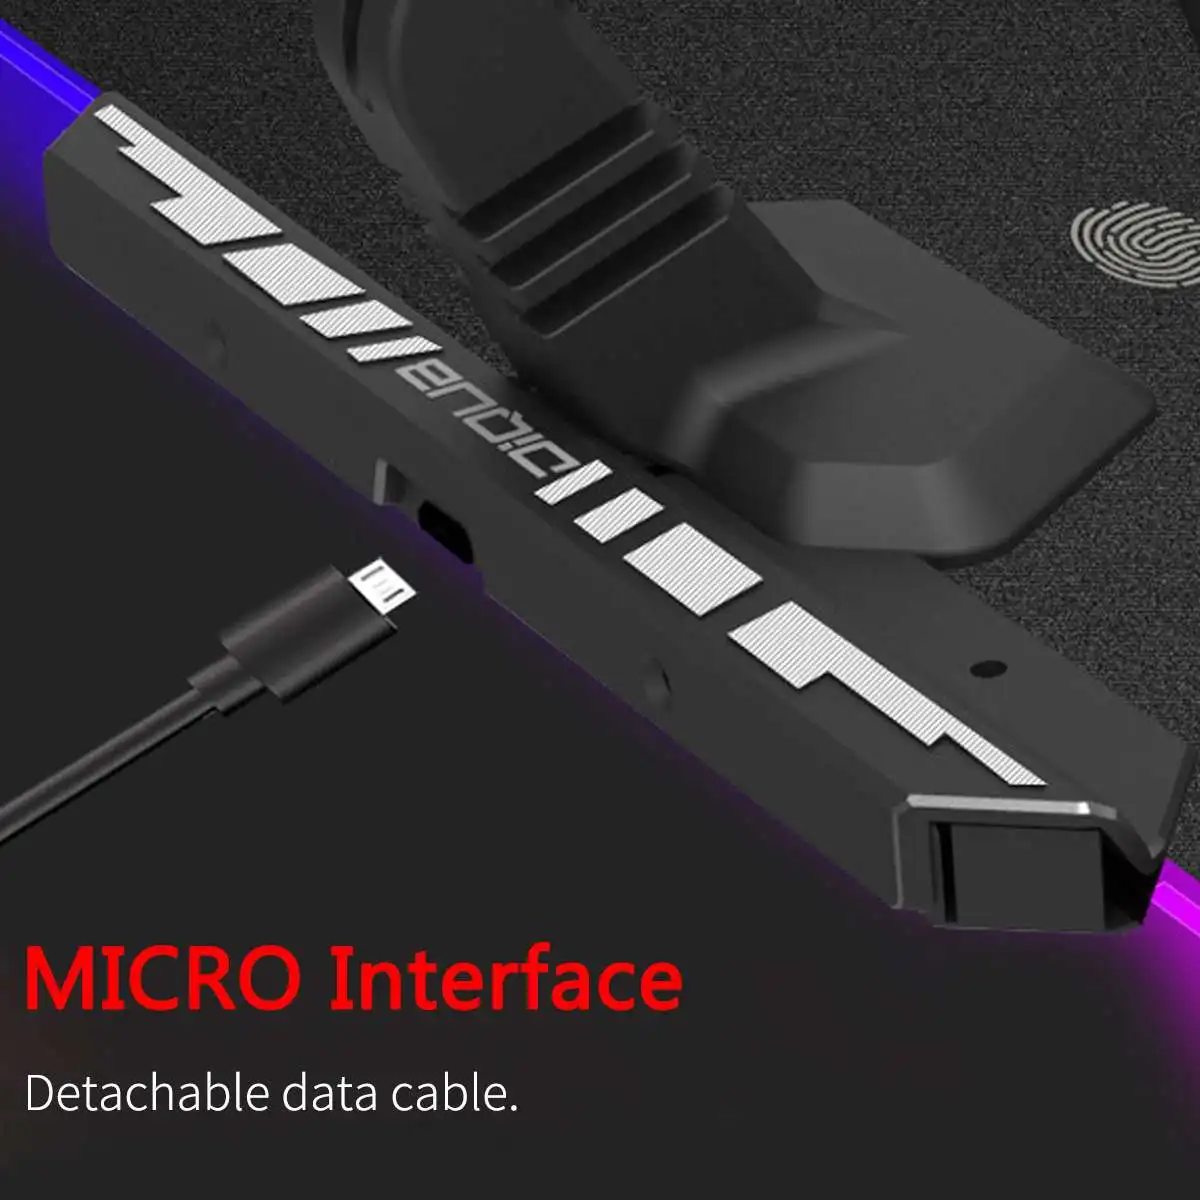 Акриловый цветной светодиодный Жесткий коврик для мыши RGB, игровой коврик для мыши, коврик для мыши Touchs, управление для ноутбука, компьютера+ кронштейн+ кабель USB